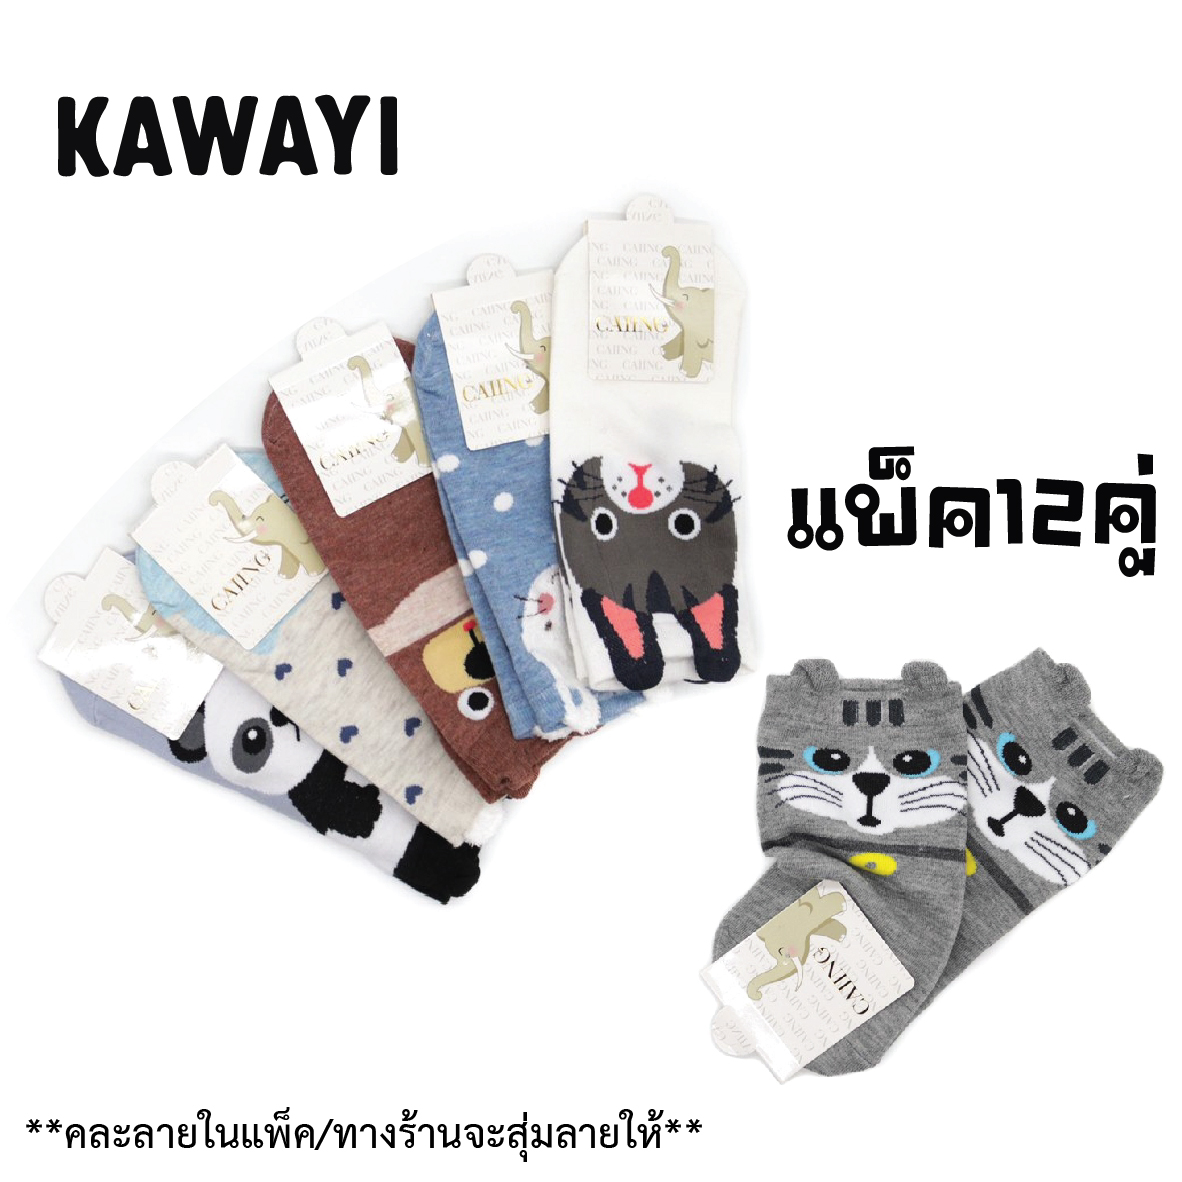 ?สินค้าขายดี!!?รับประกันคุณภาพ? ถุงเท้าแฟชั่นเกาหลี 3Dมีหู ลายสวย น่ารัก COTTON แพ็ค12คู่ราคาพิเศษ‼?